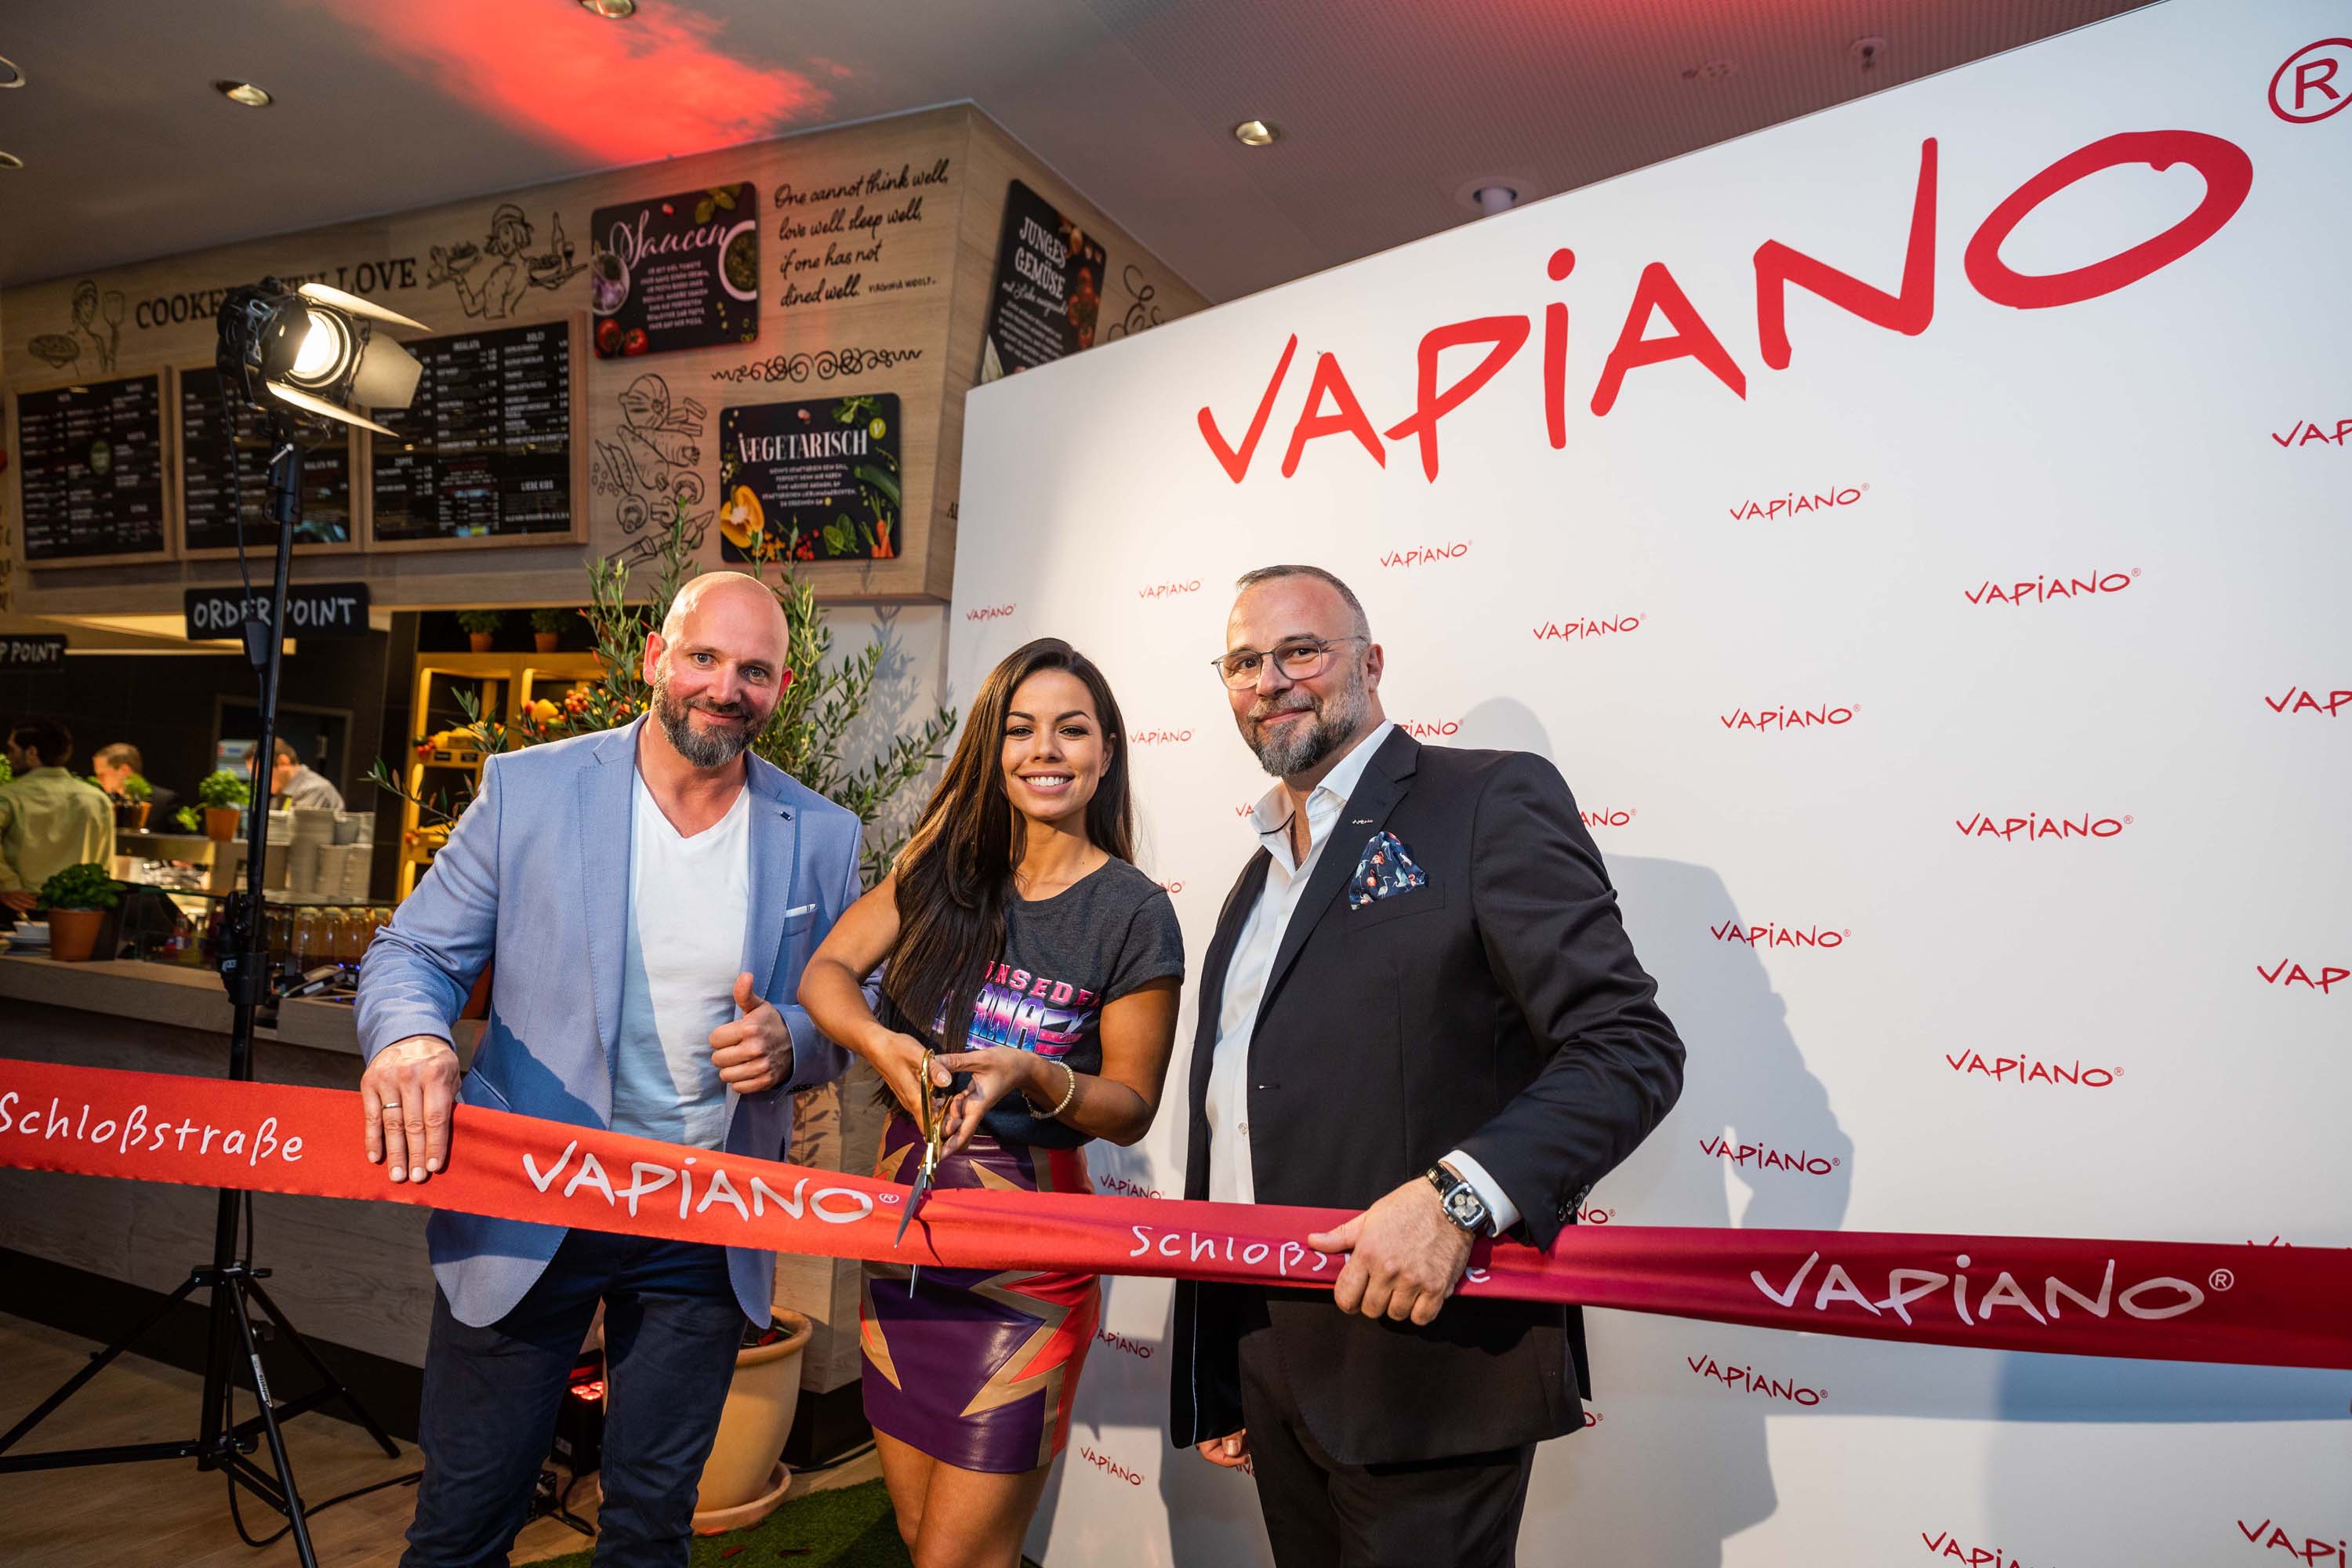 Fernanda Brandao attends opening of Vapiano Restaurant